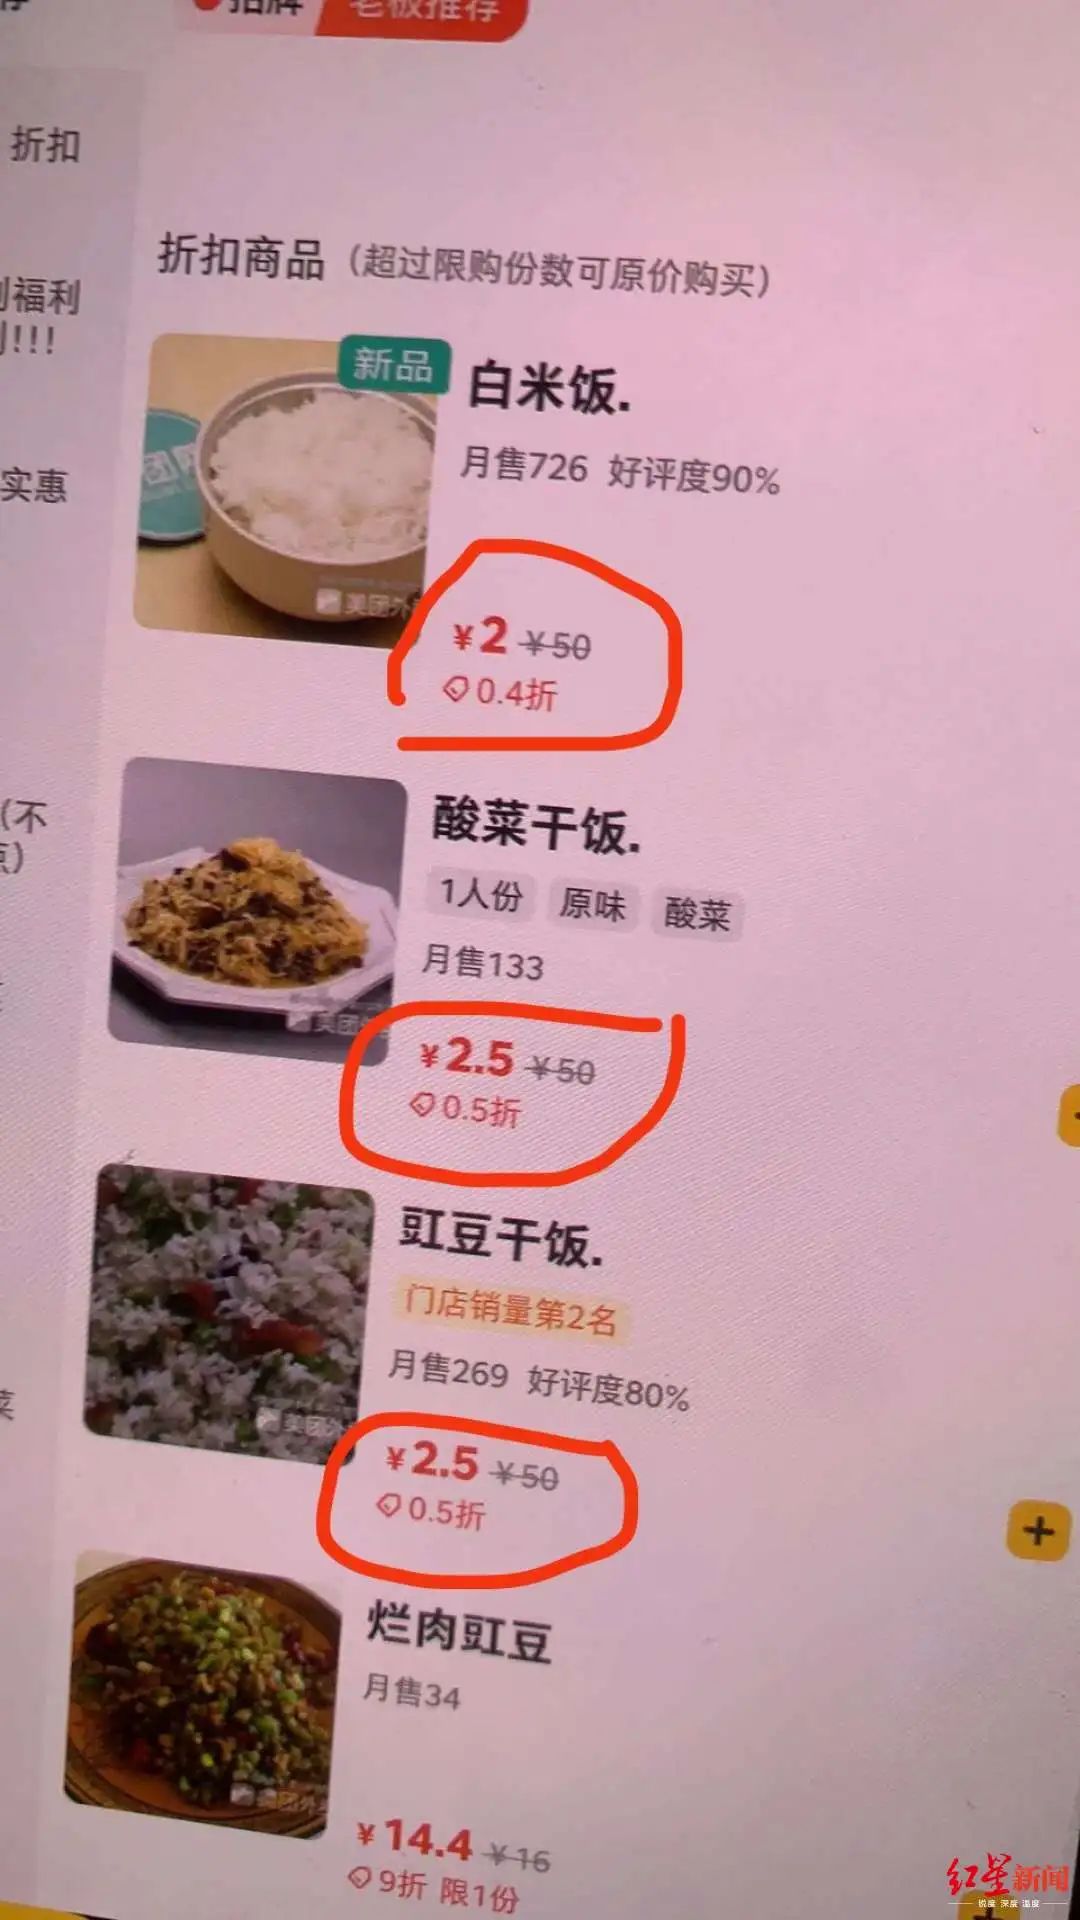 小心，你点的打折外卖可能在“假打”：一碗白米饭原价50元，0.4折后2元